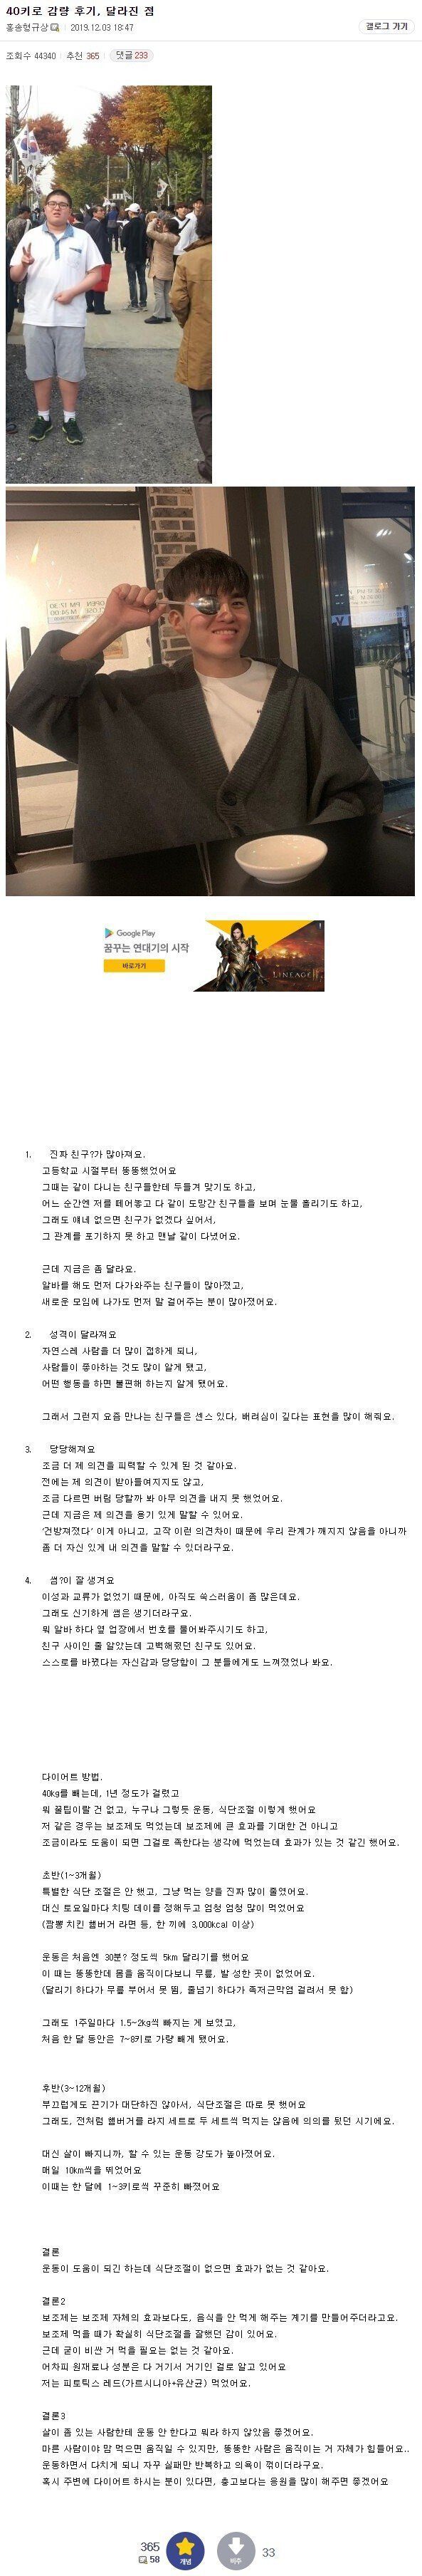 40kg 감량한 헬갤러의 달라진 인생 후기